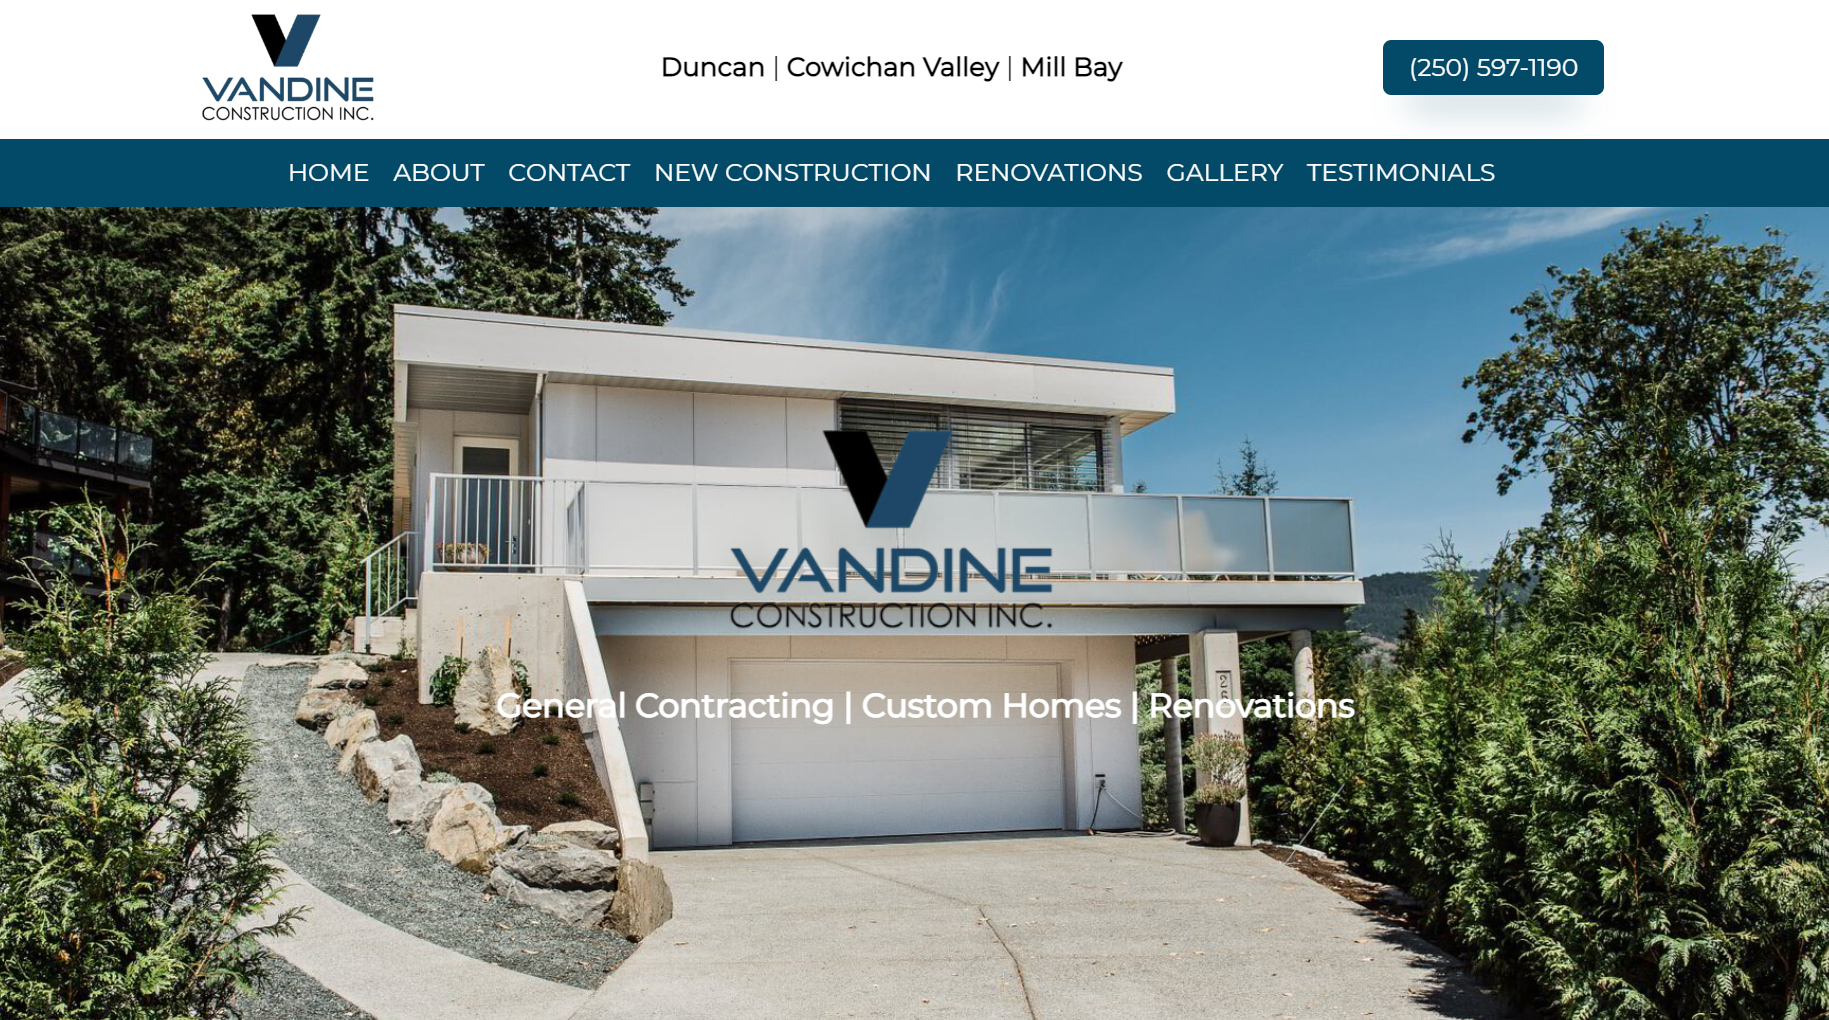 Vandine Construction